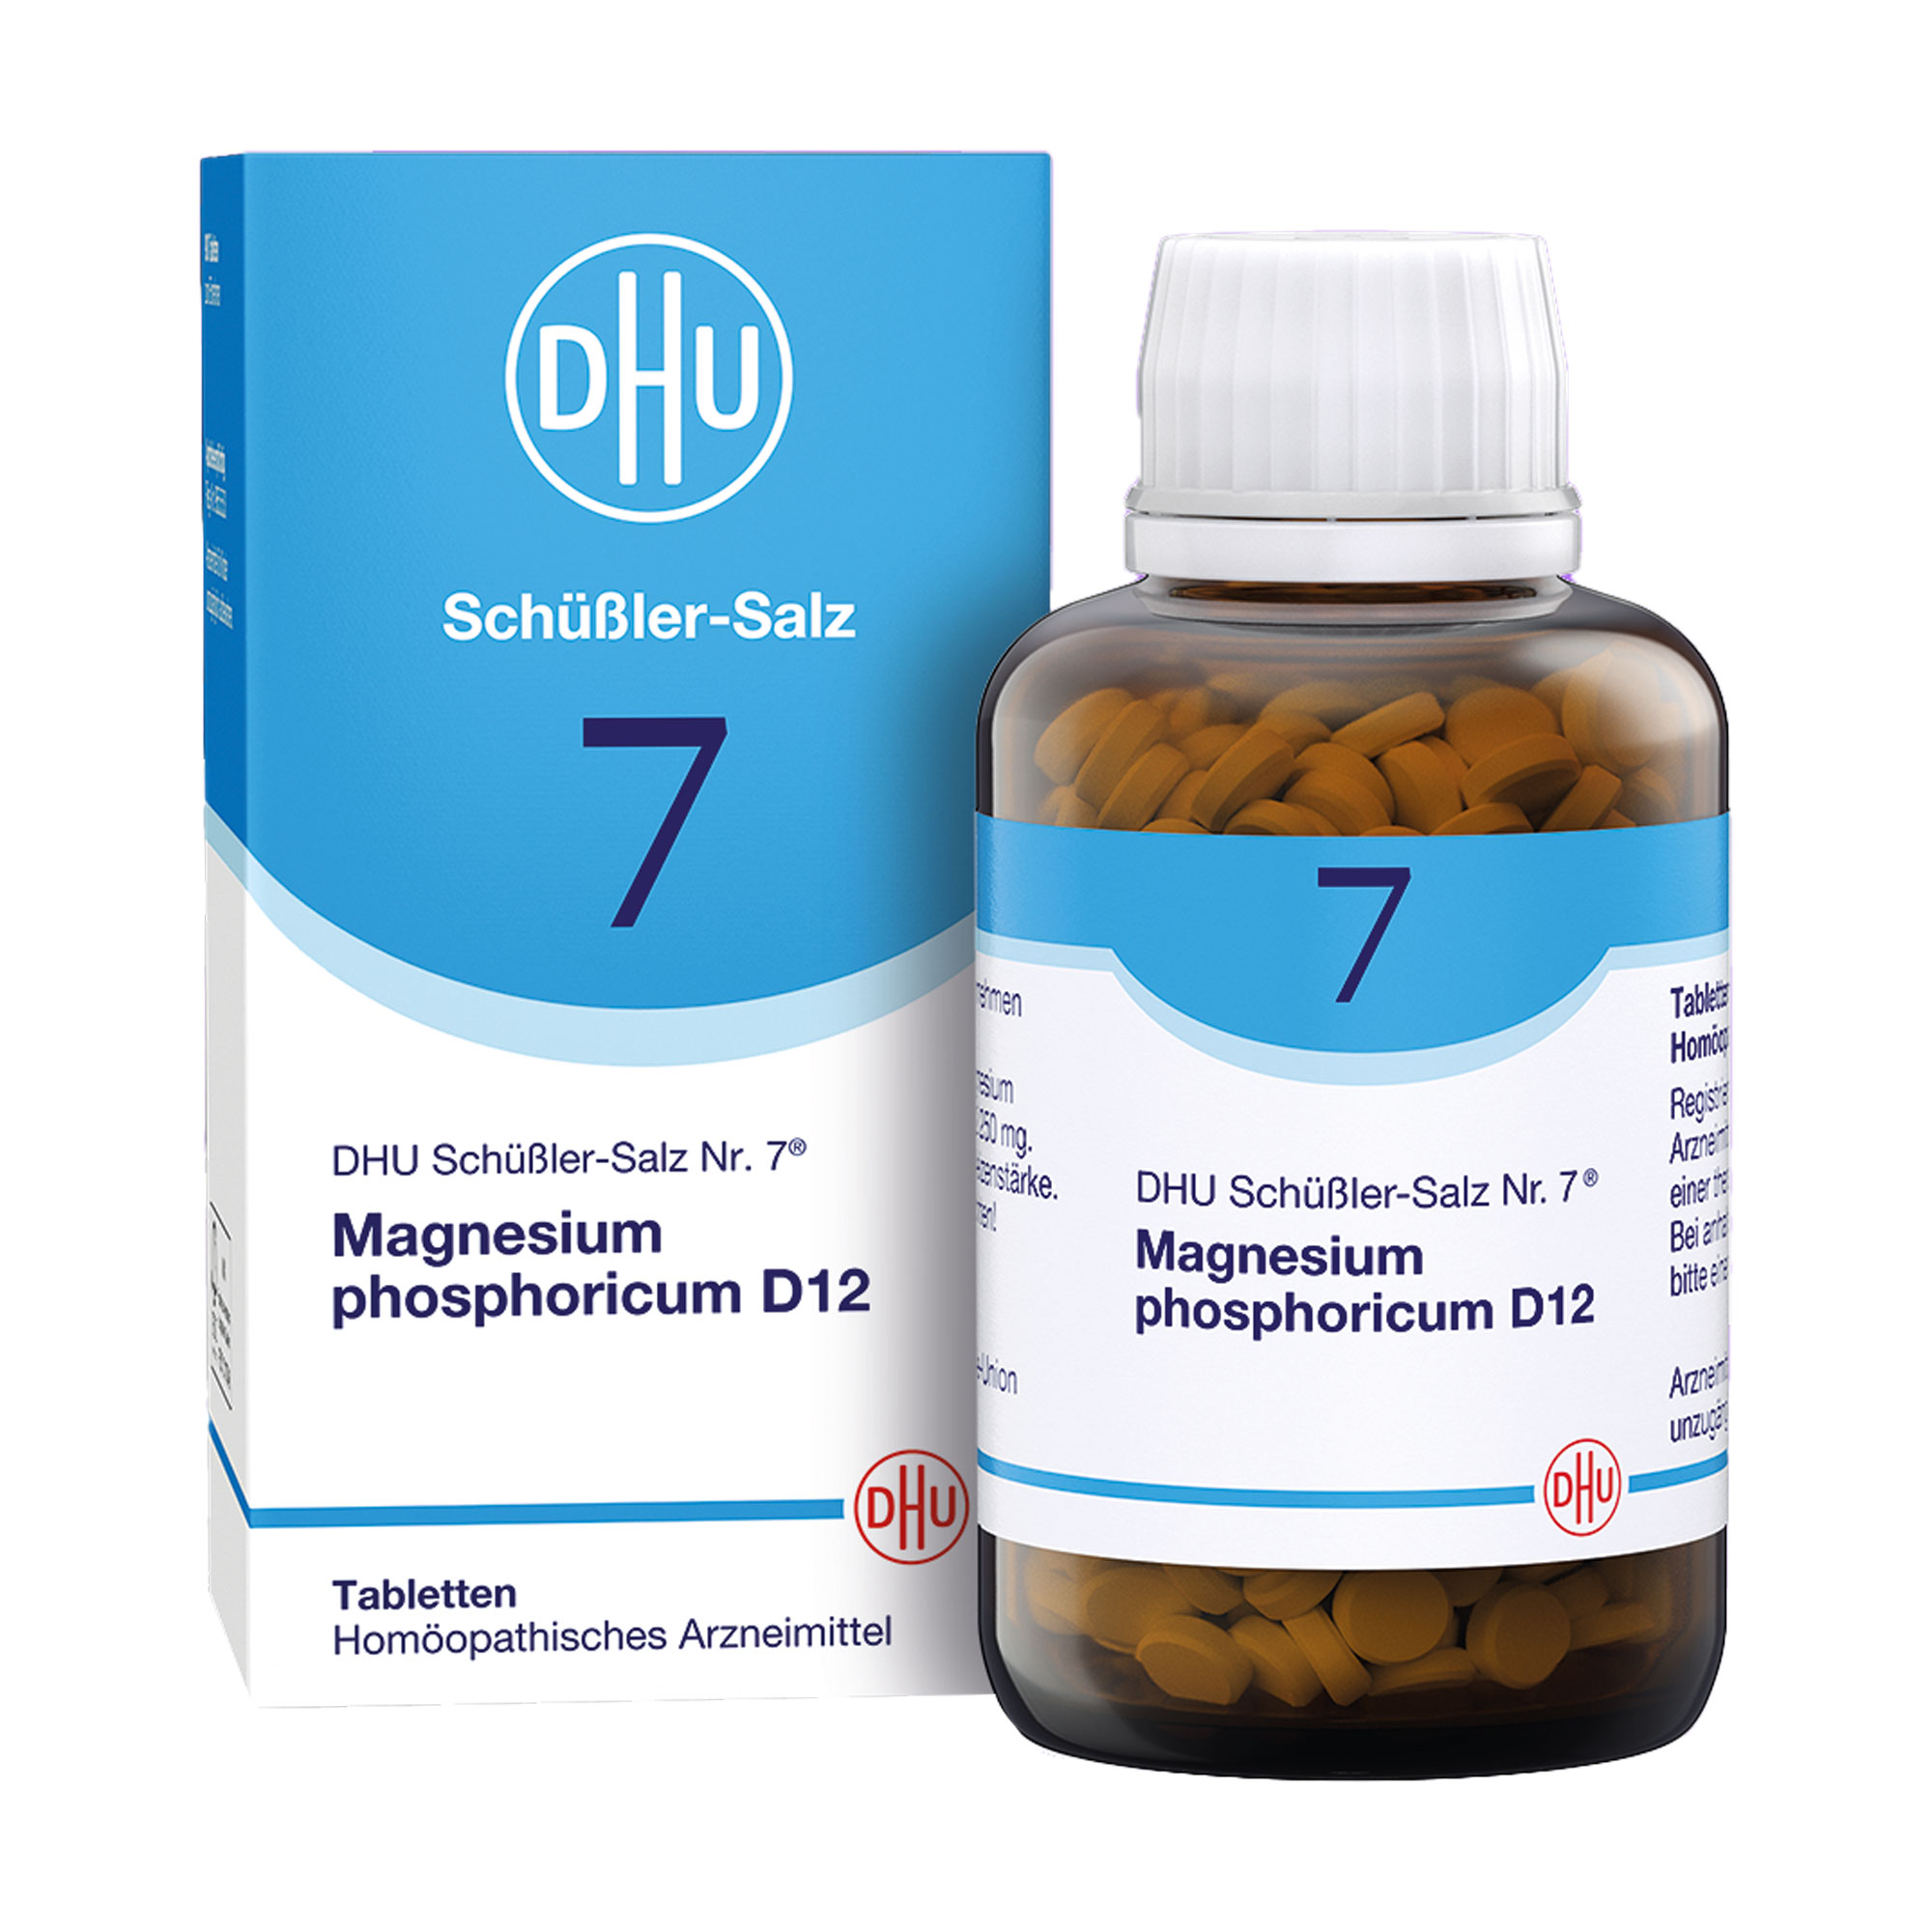 Homöopathisches Arzneimittel mit Magnesium phosphoricum Trit. D12.